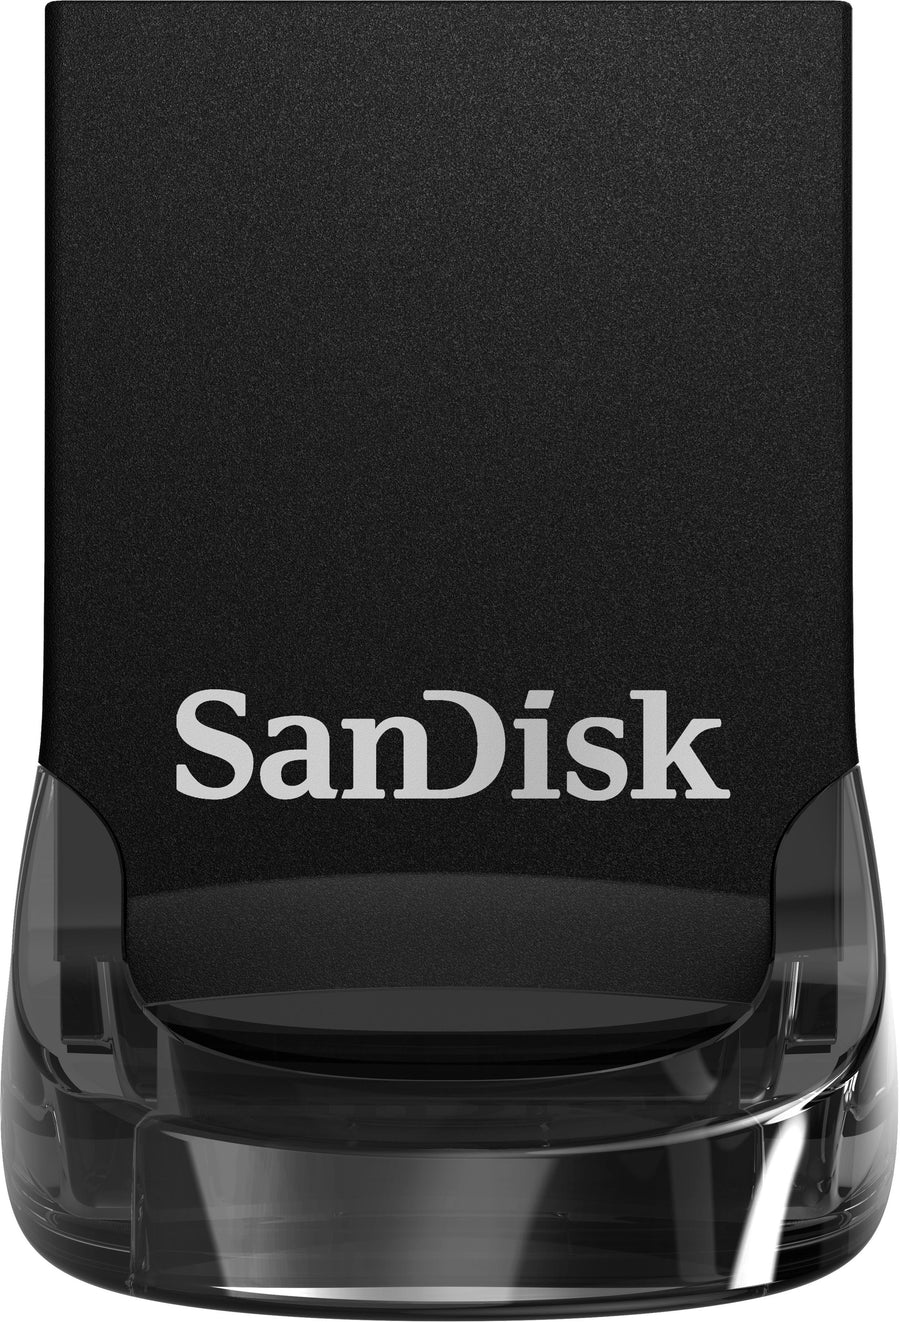 SanDisk - Ultra Fit 512GB USB 3.1 Flash Drive - Black_0